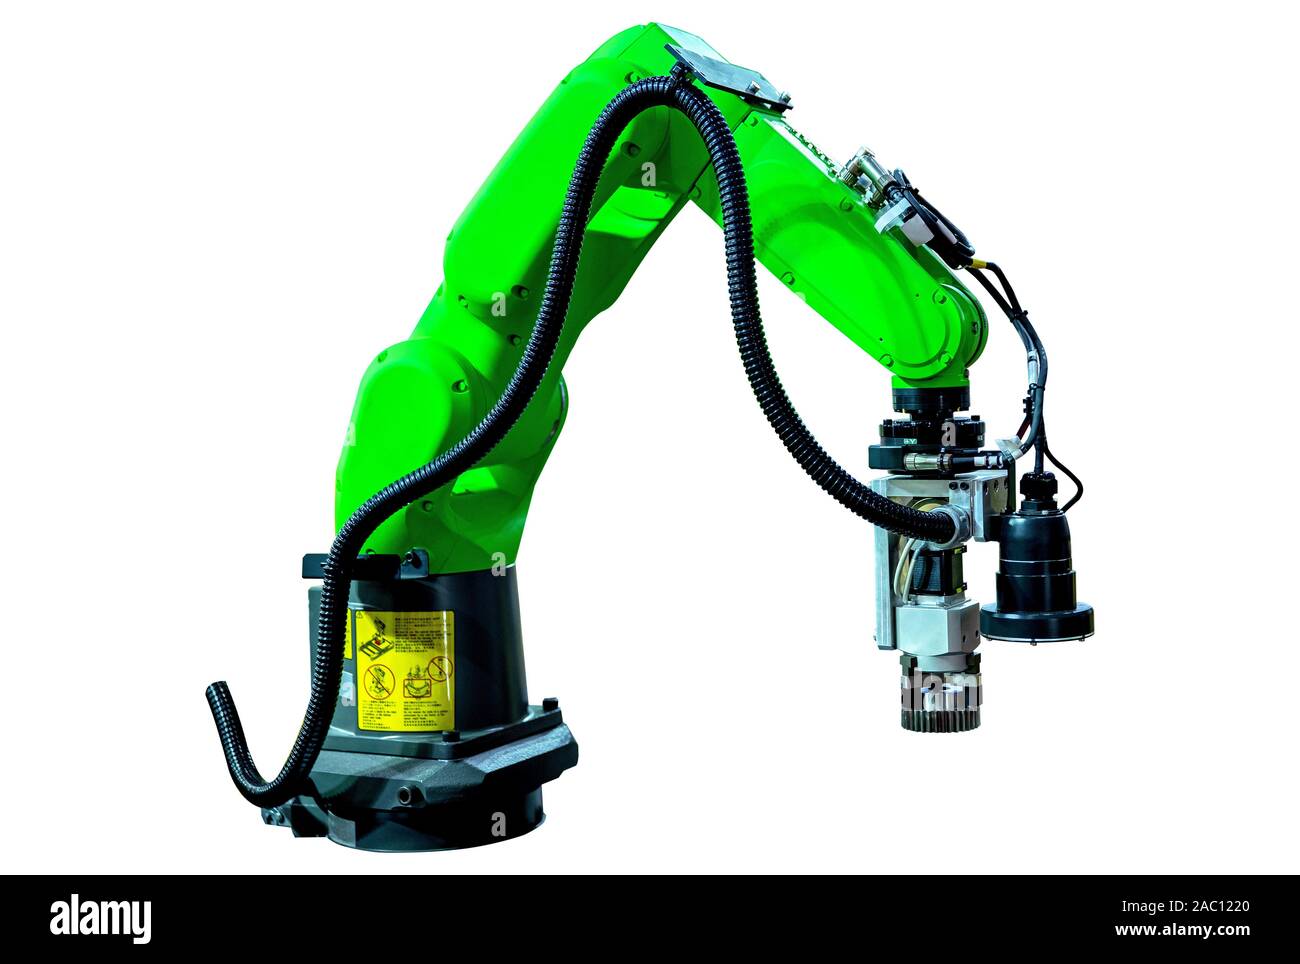 Isolierte Roboterarm Maschine für Industrie Herstellung Betrieb auf weißem Hintergrund. Stockfoto